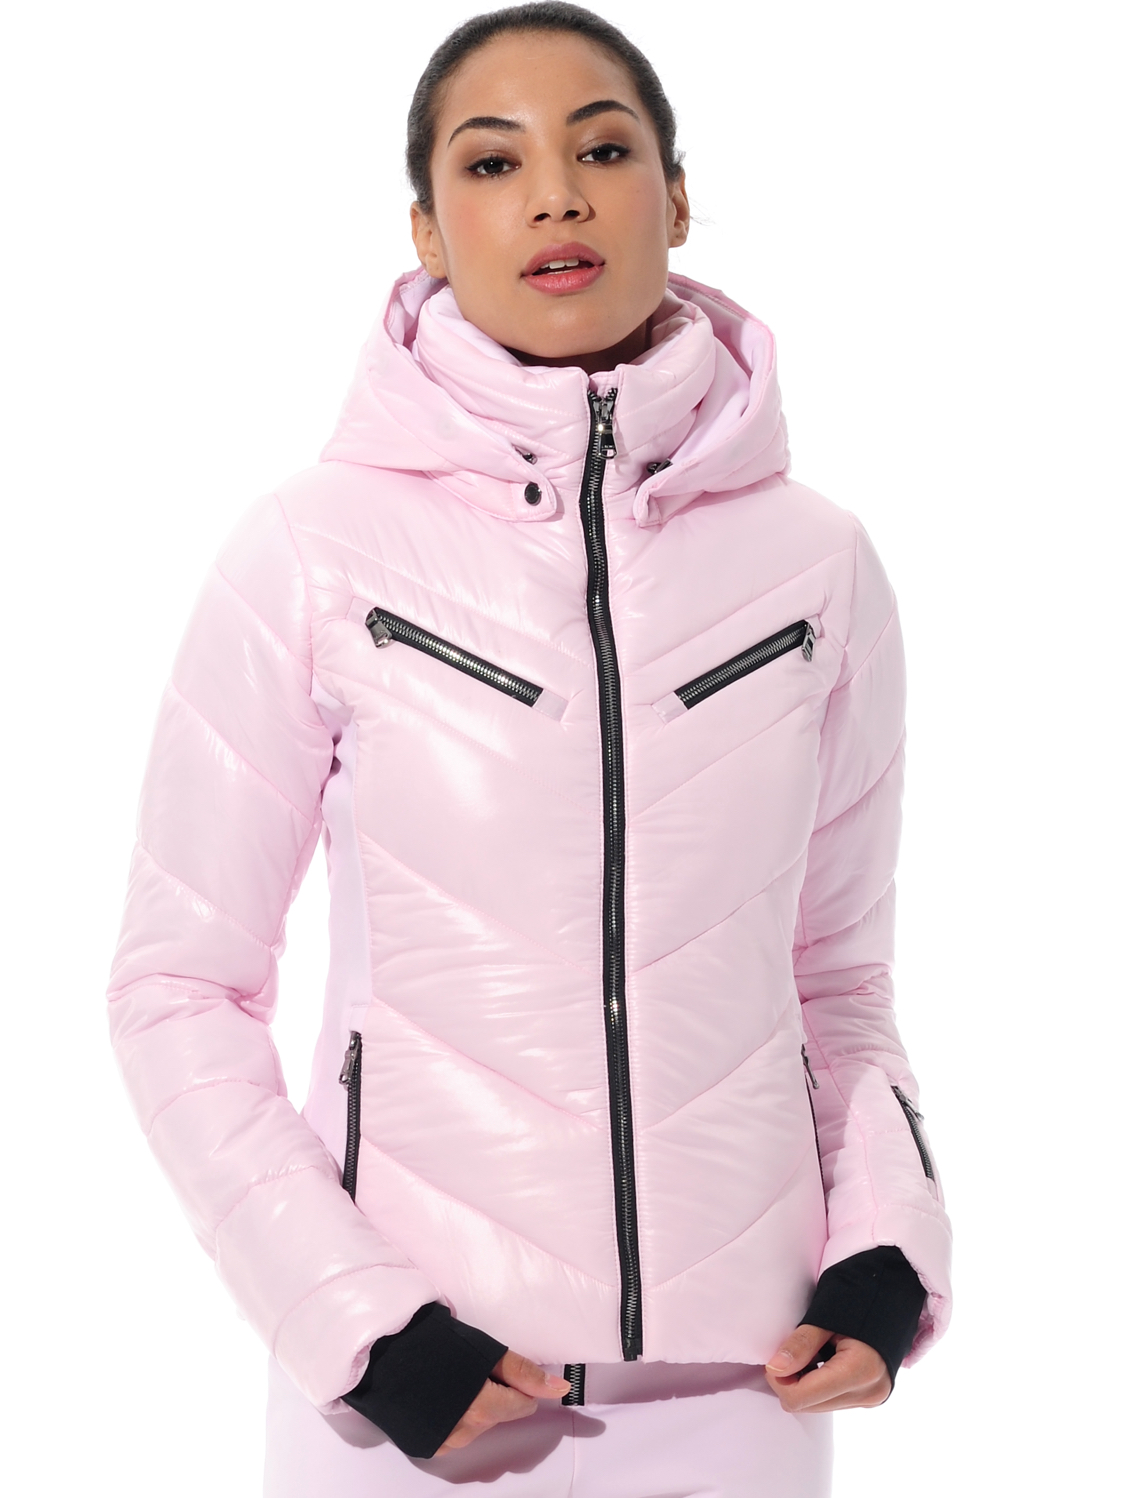 shiny ski jacket with 4way stretch side panels macaron 